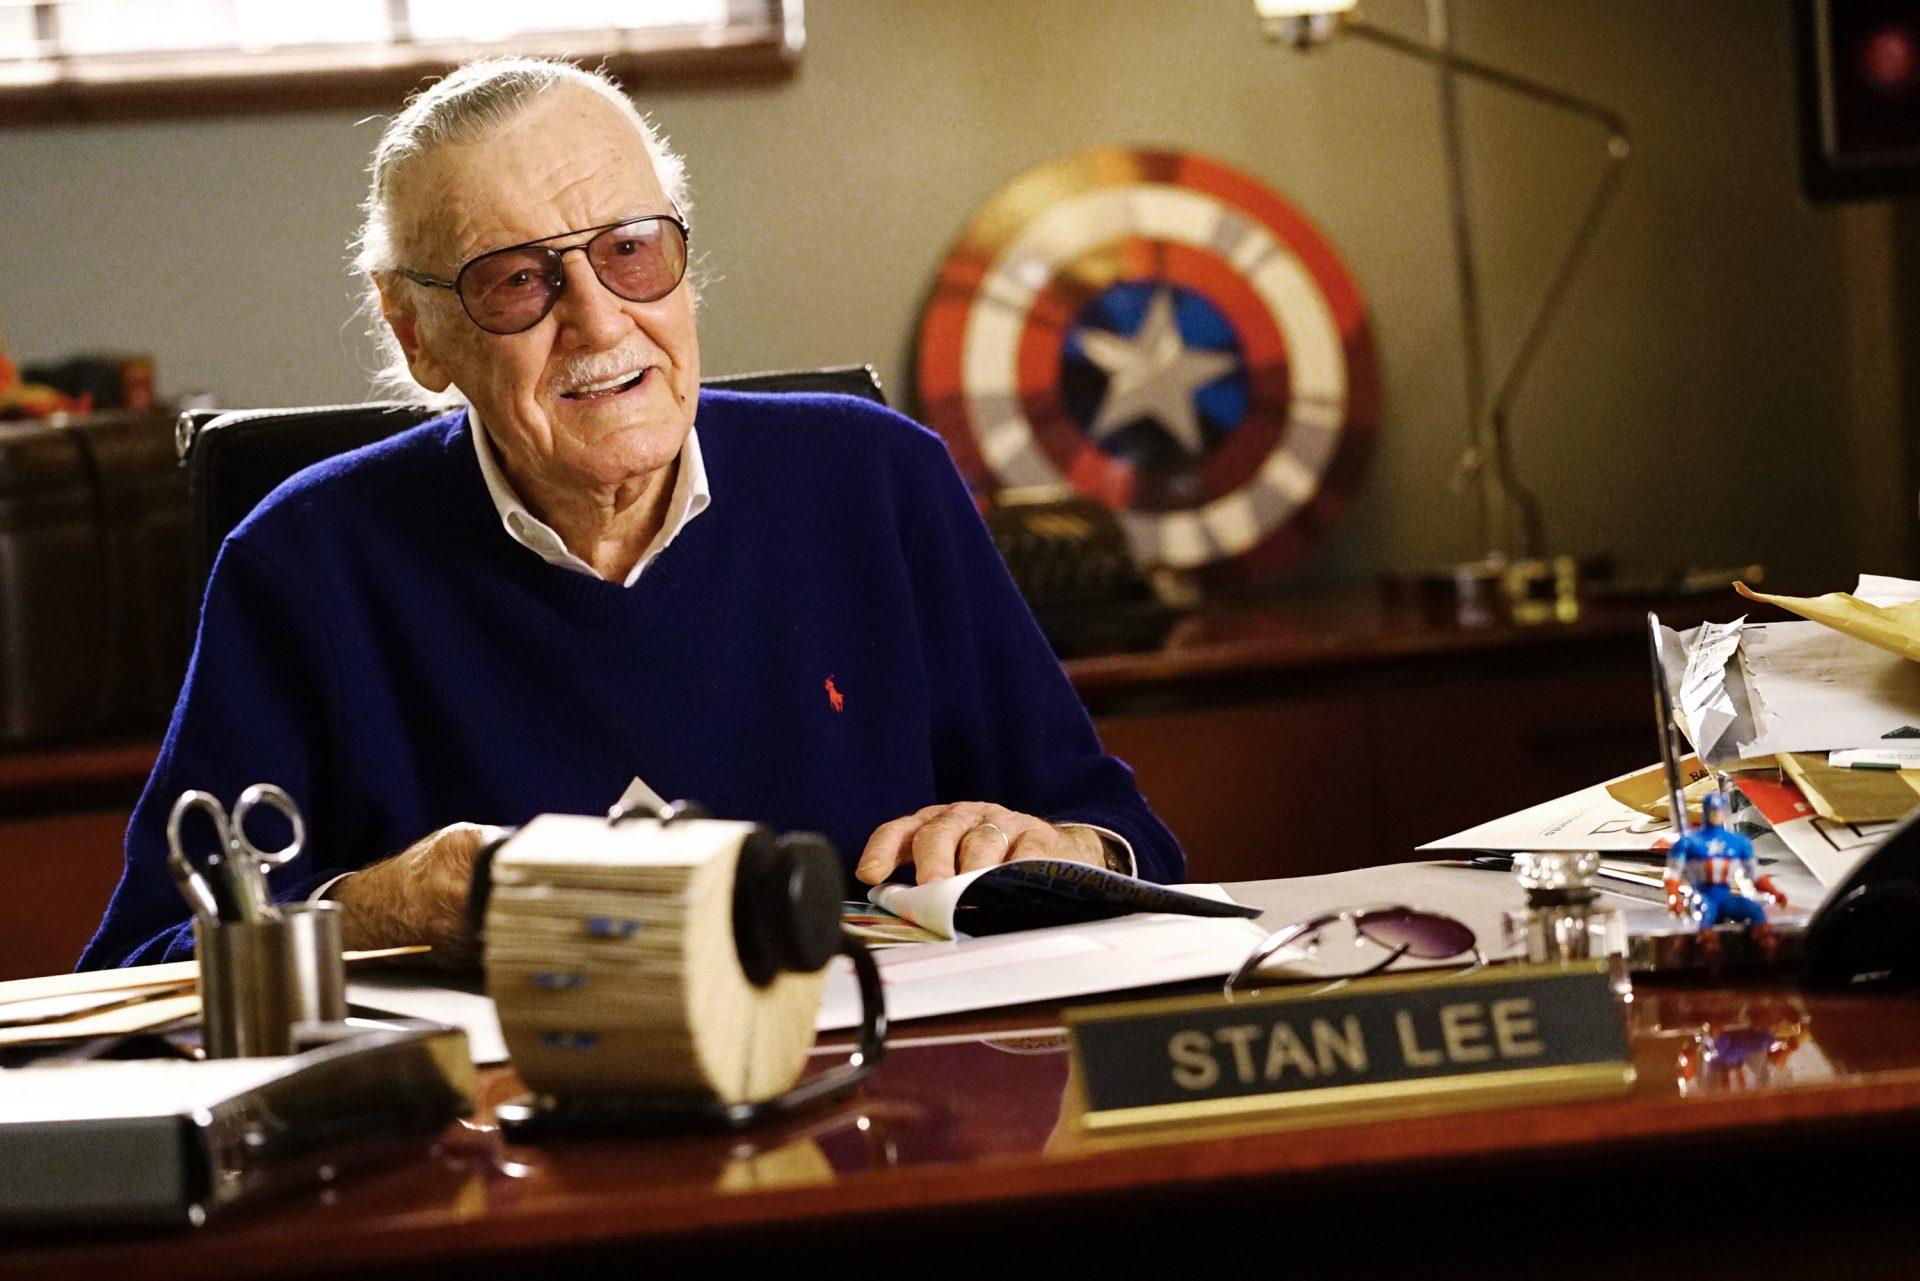 Conta oficial de Stan Lee no Twitter publica homenagem ao roteirista